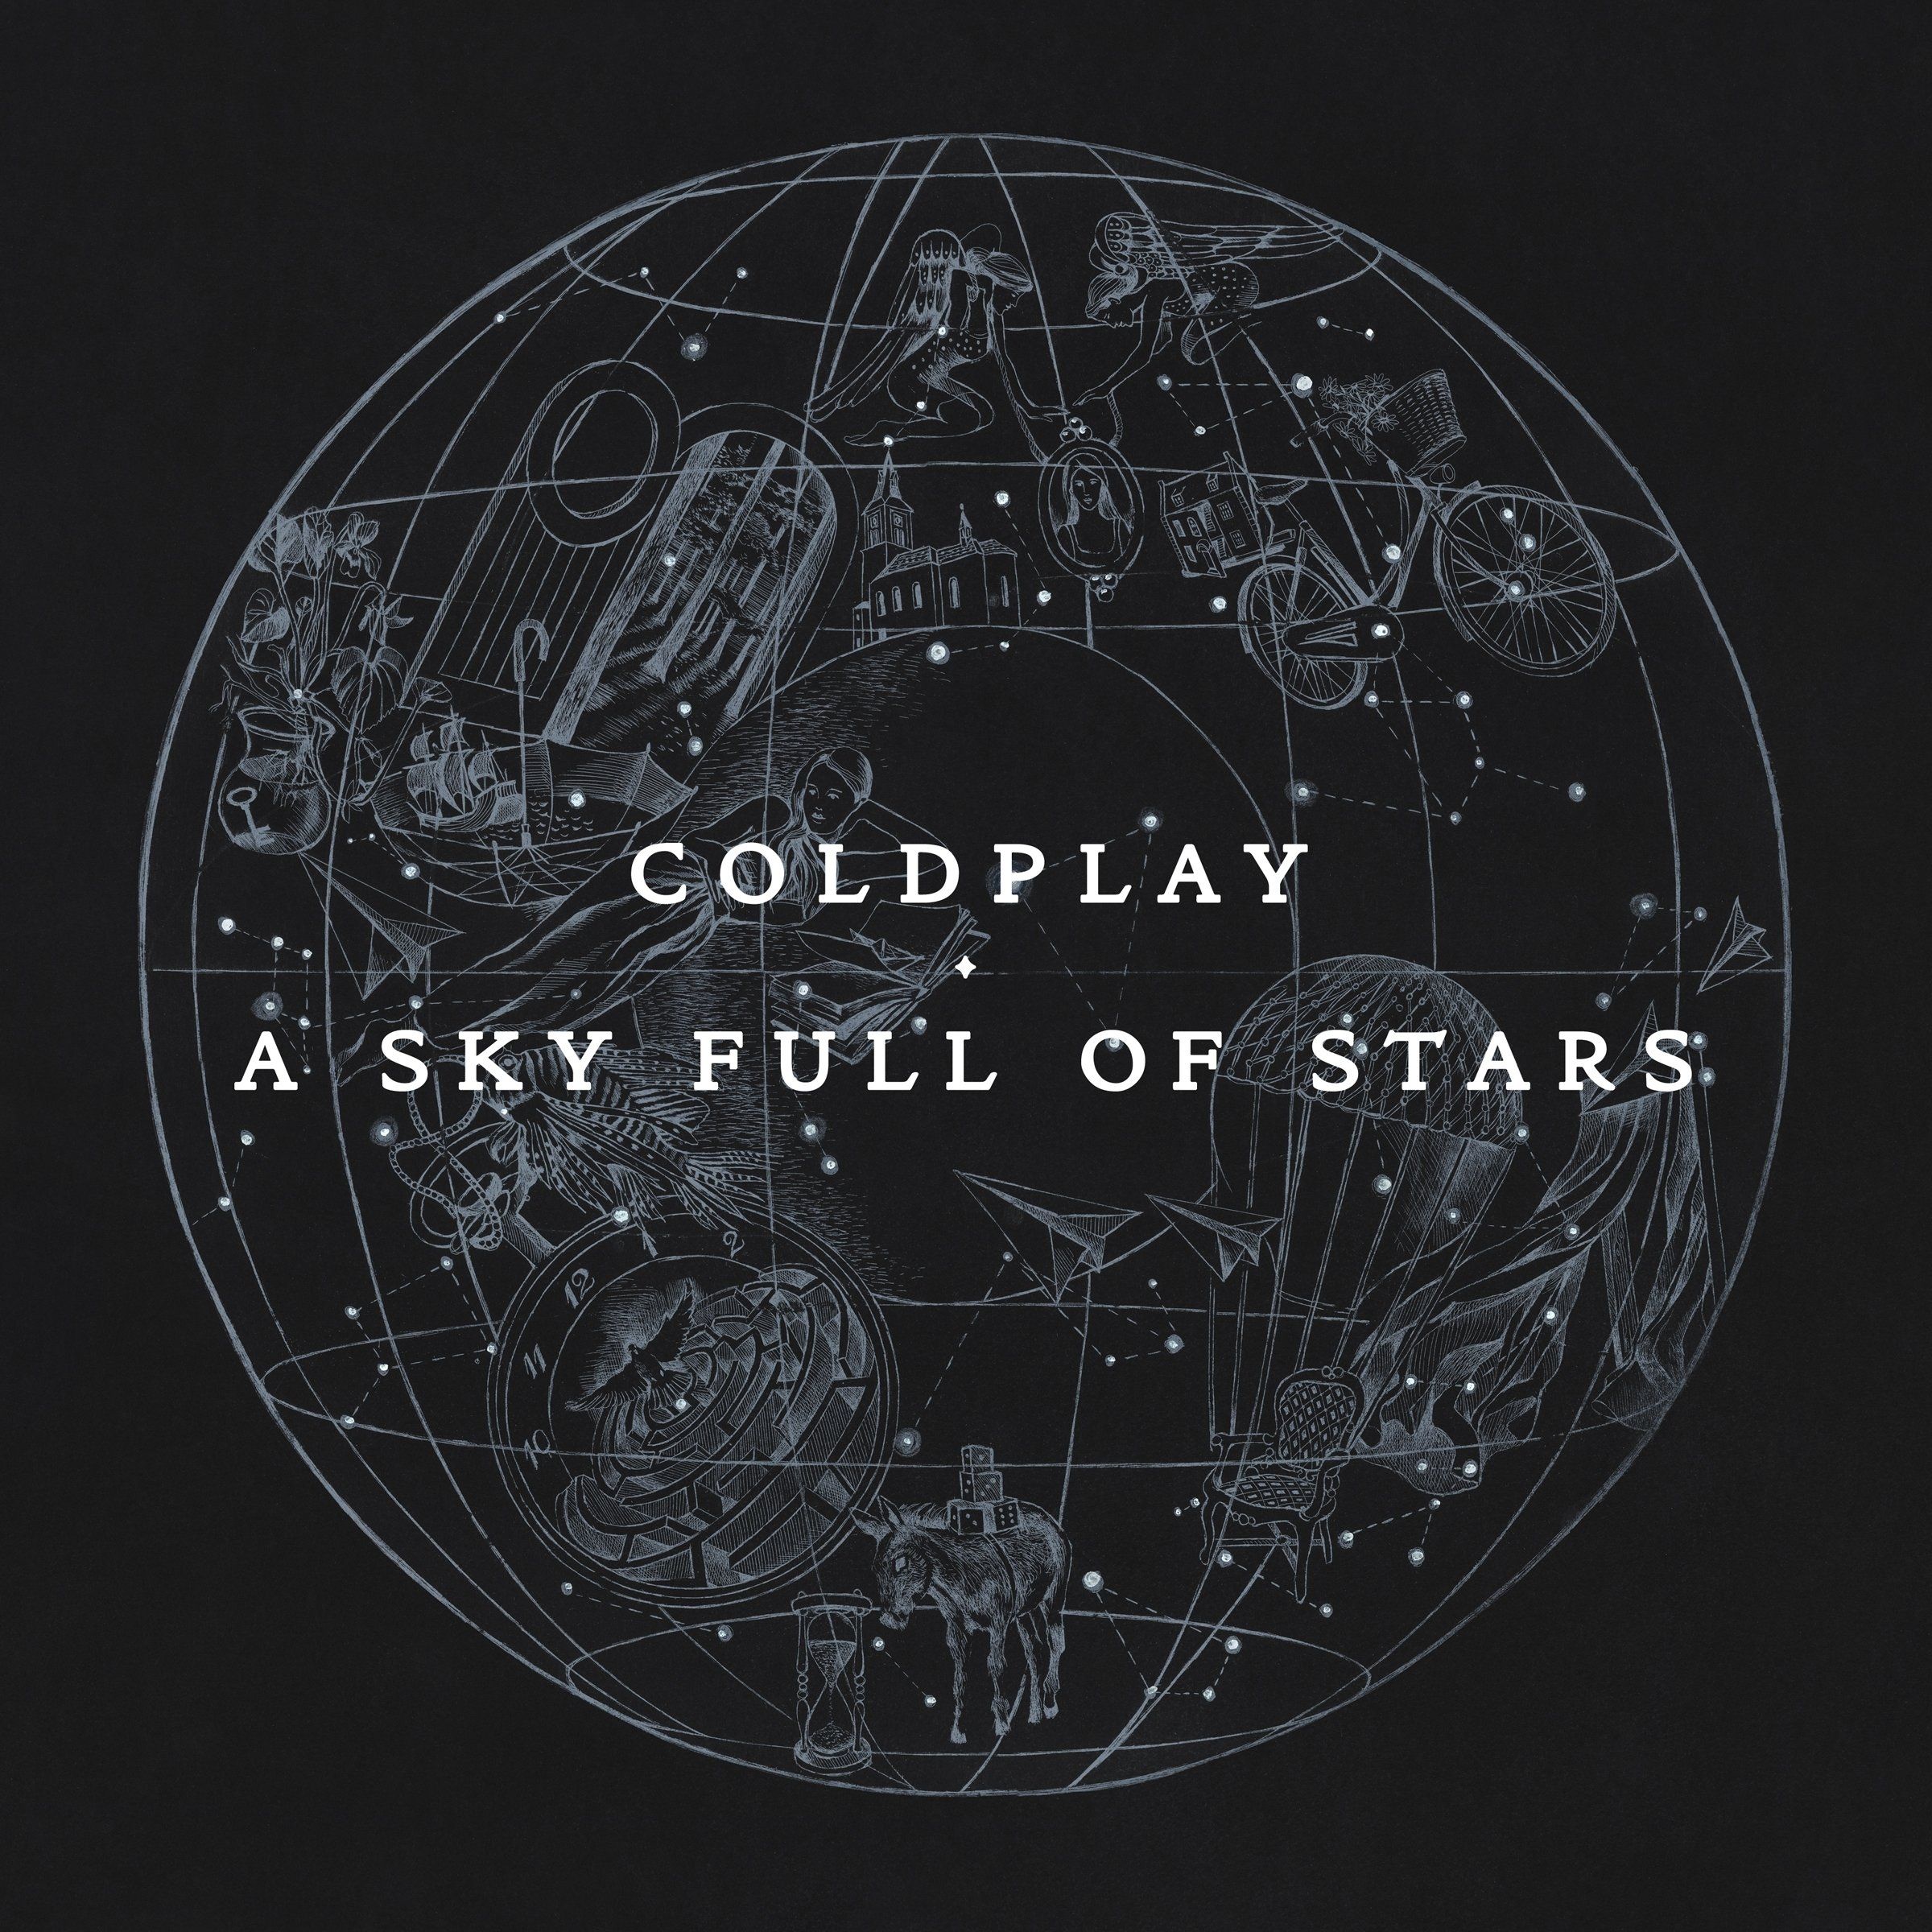 Imagem do álbum A Sky Full Of Stars do(a) artista Coldplay